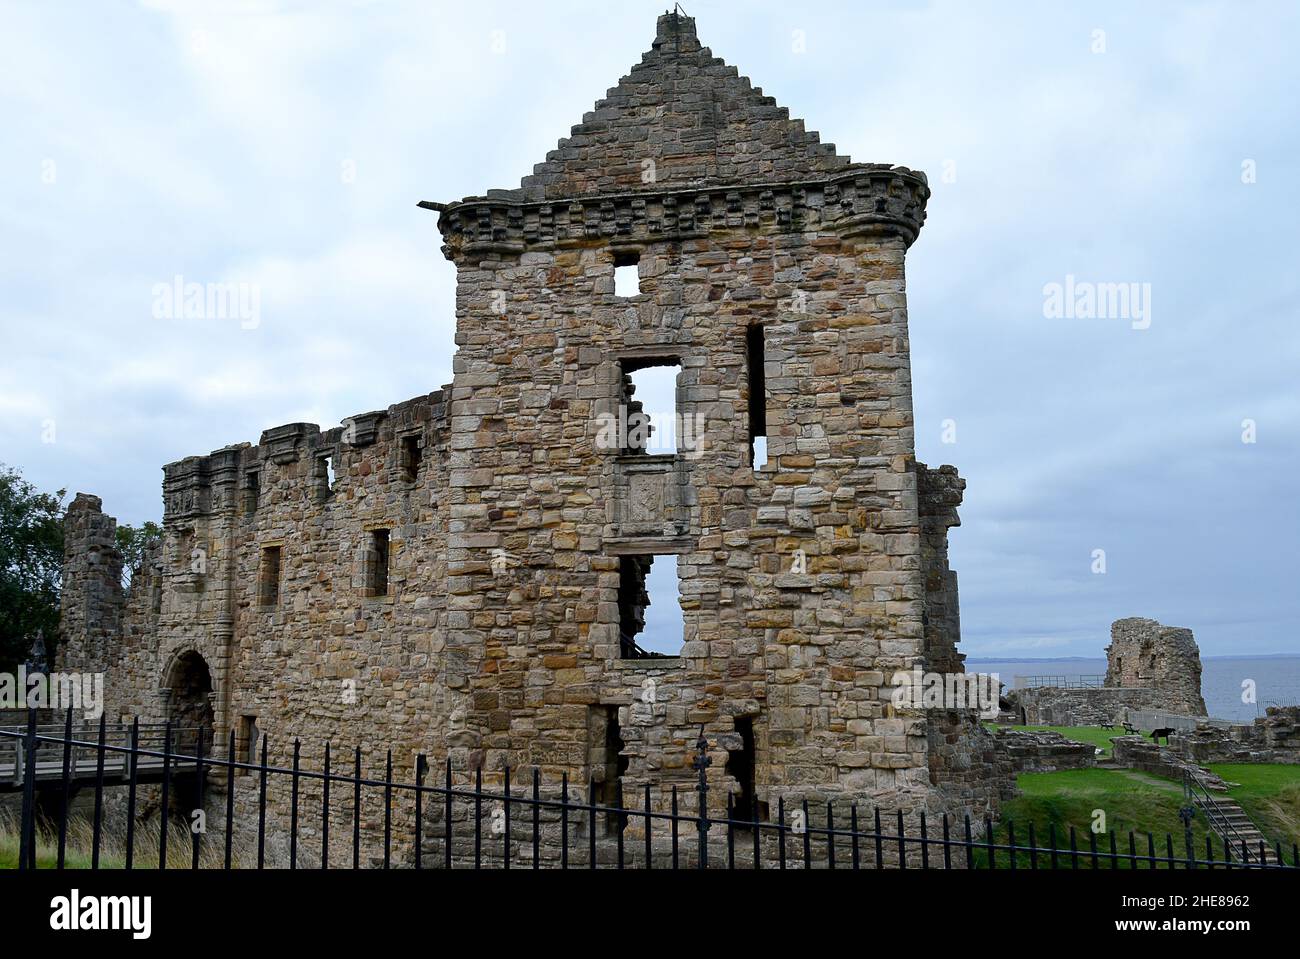 Anteriormente el palacio de los arzobispos, un castillo ha estado parado en este sitio en St Andrews, Fife, Escocia, desde finales del siglo 12th Foto de stock